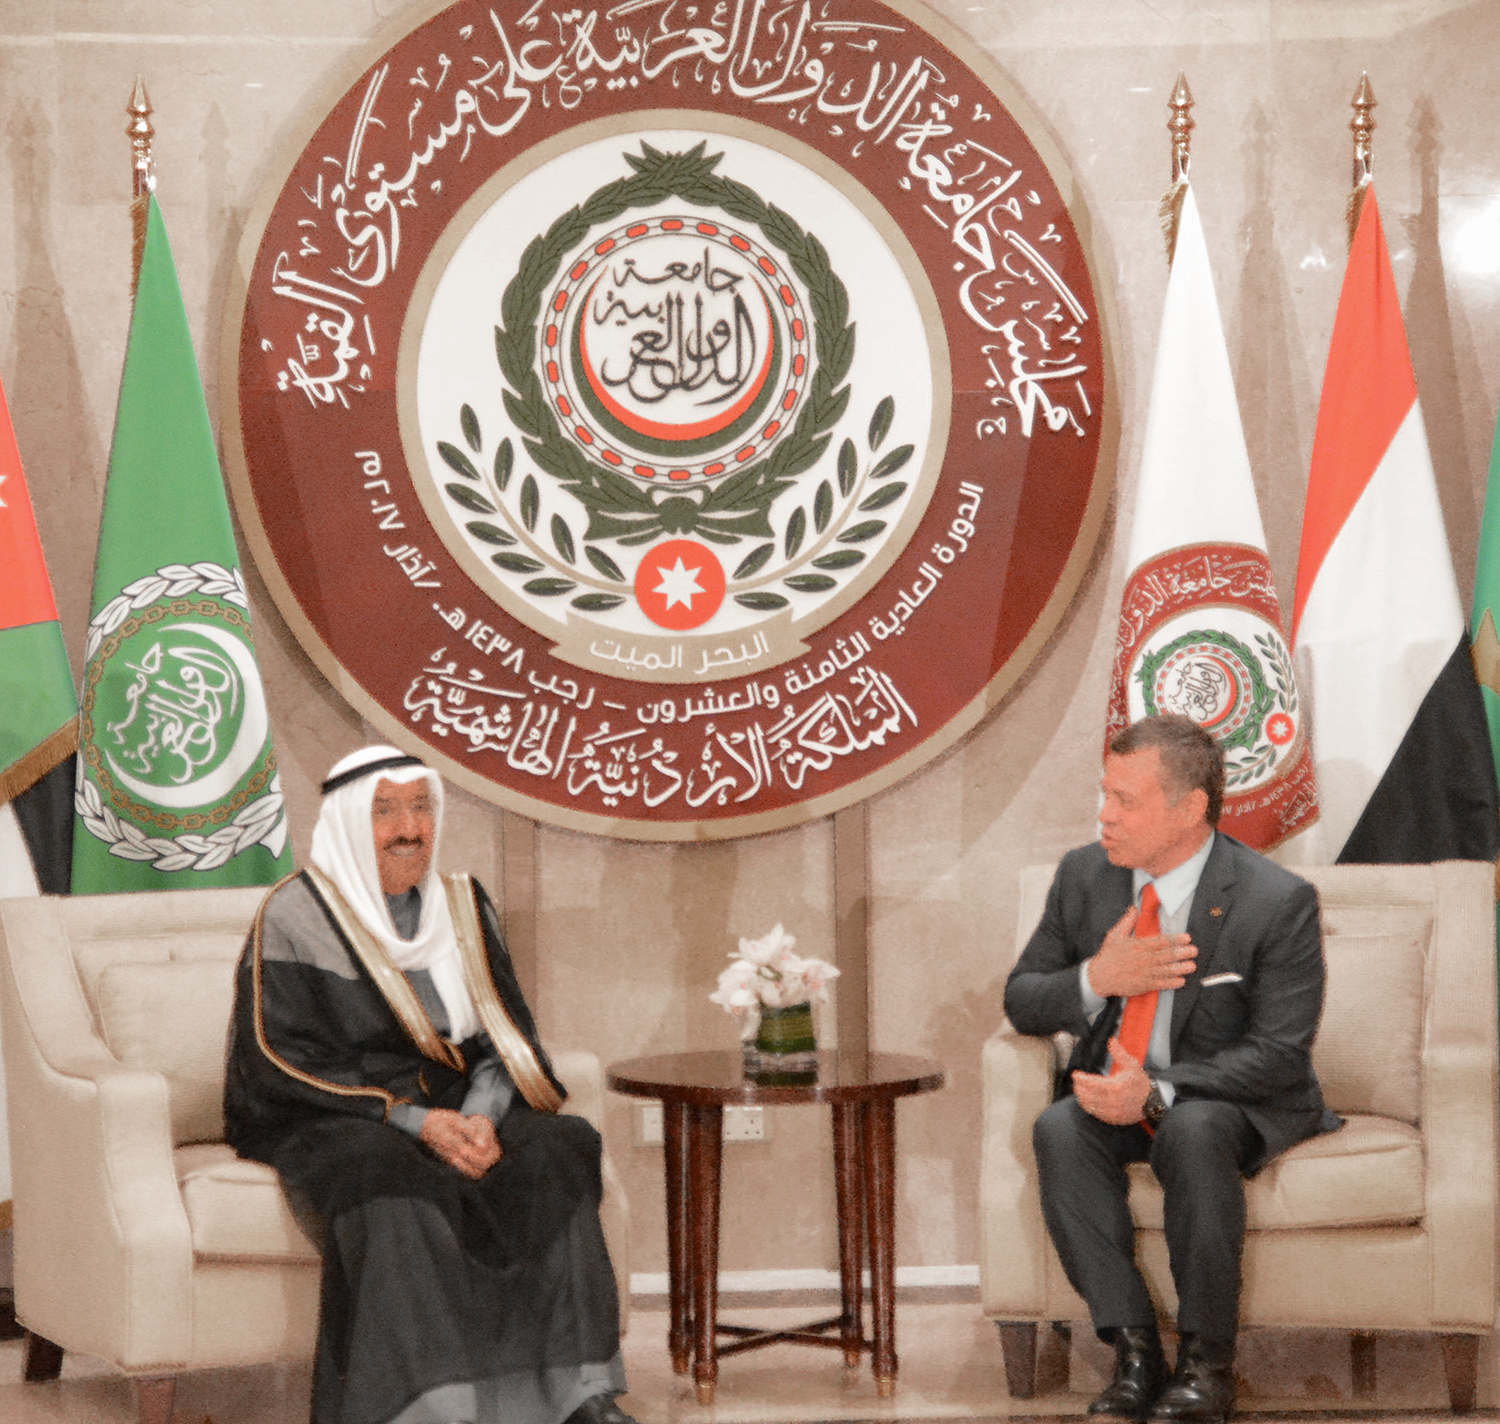 His Highness the Amir Sheikh Sabah Al-Ahmad Al-Jaber Al-Sabah arrives in Jordan, leading Kuwait's delegation to the 28th Arab Summit